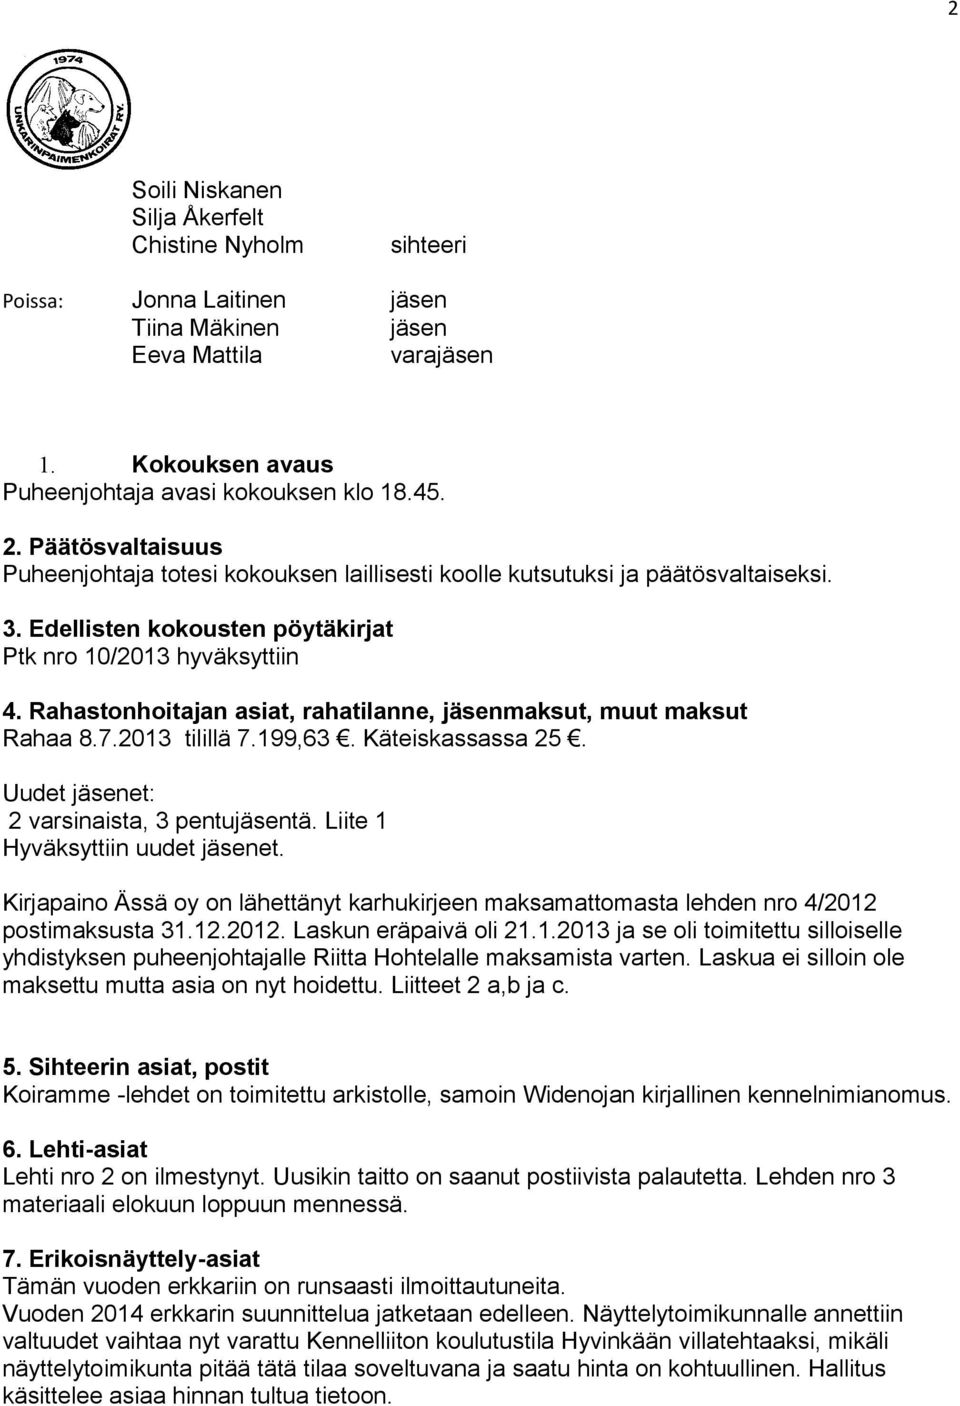 Uudet jäsenet: 2 varsinaista, 3 pentujäsentä. Liite 1 Hyväksyttiin uudet jäsenet. Kirjapaino Ässä oy on lähettänyt karhukirjeen maksamattomasta lehden nro 4/2012 postimaksusta 31.12.2012. Laskun eräpaivä oli 21.